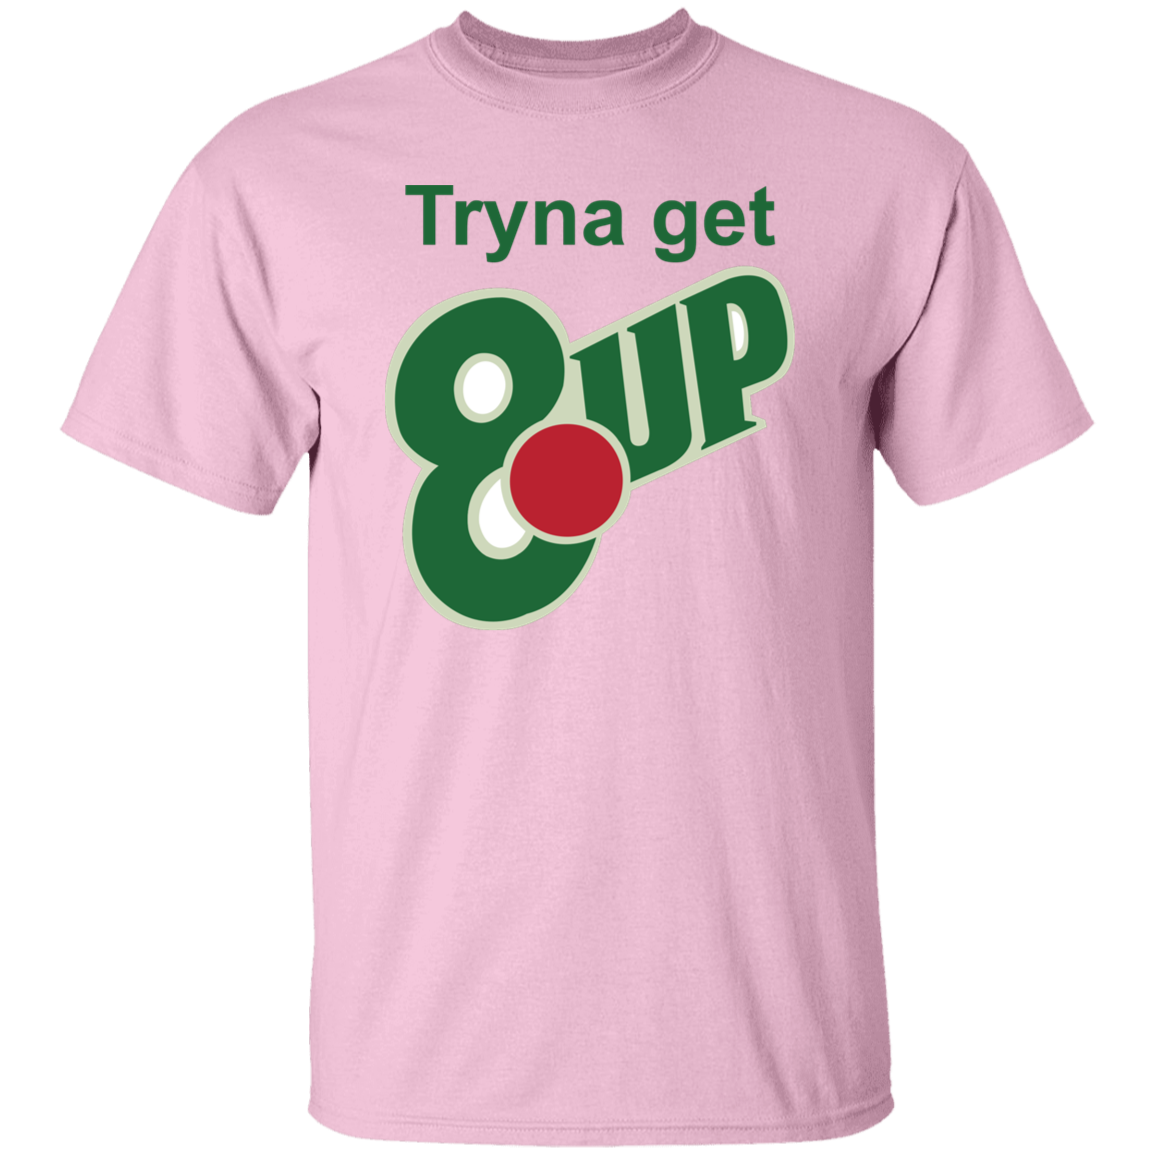 8 up -  T-Shirt